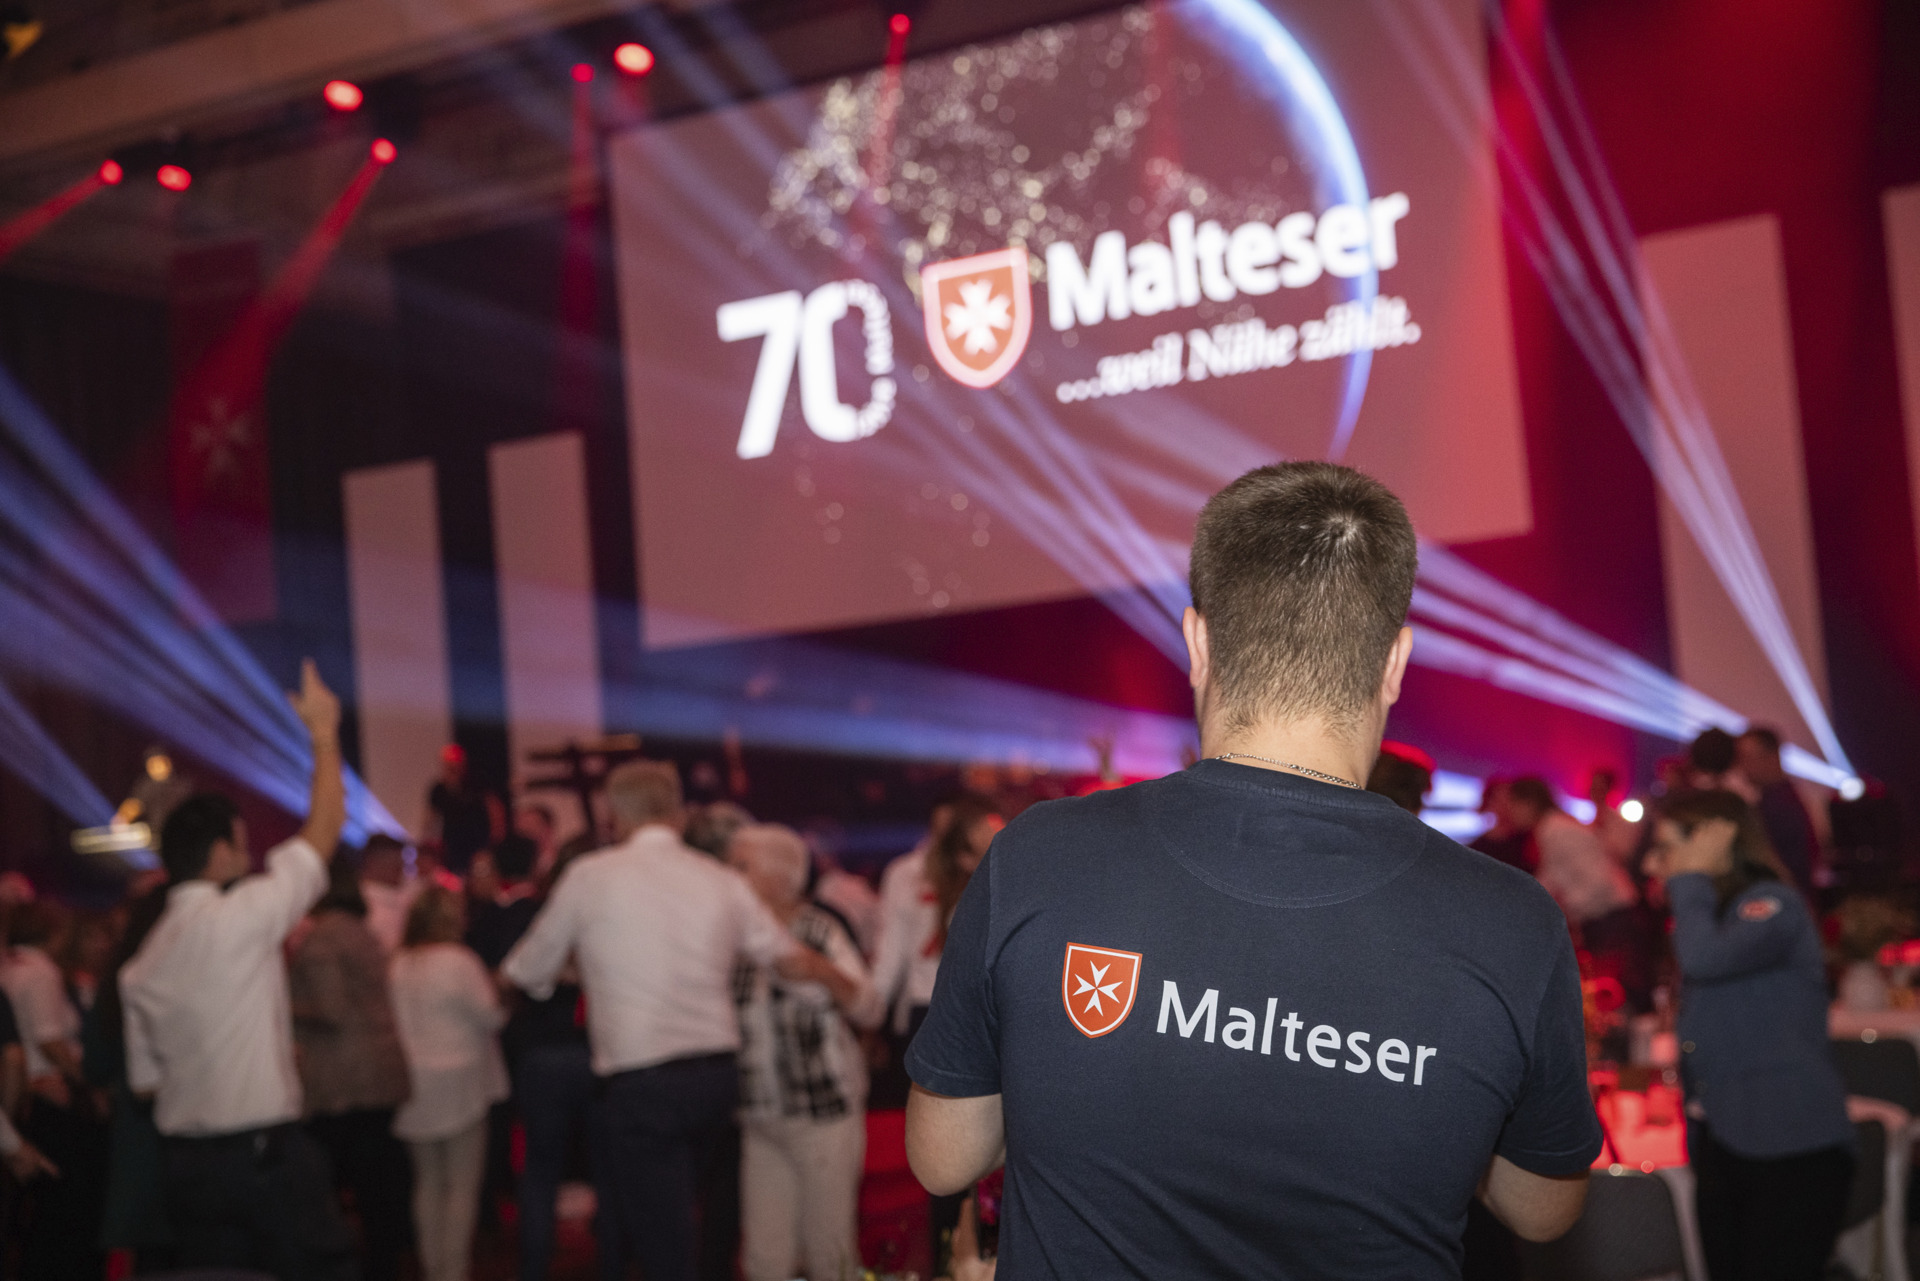 Il corpo di soccorso dell’Ordine di Malta in Germania festeggia 70 anni